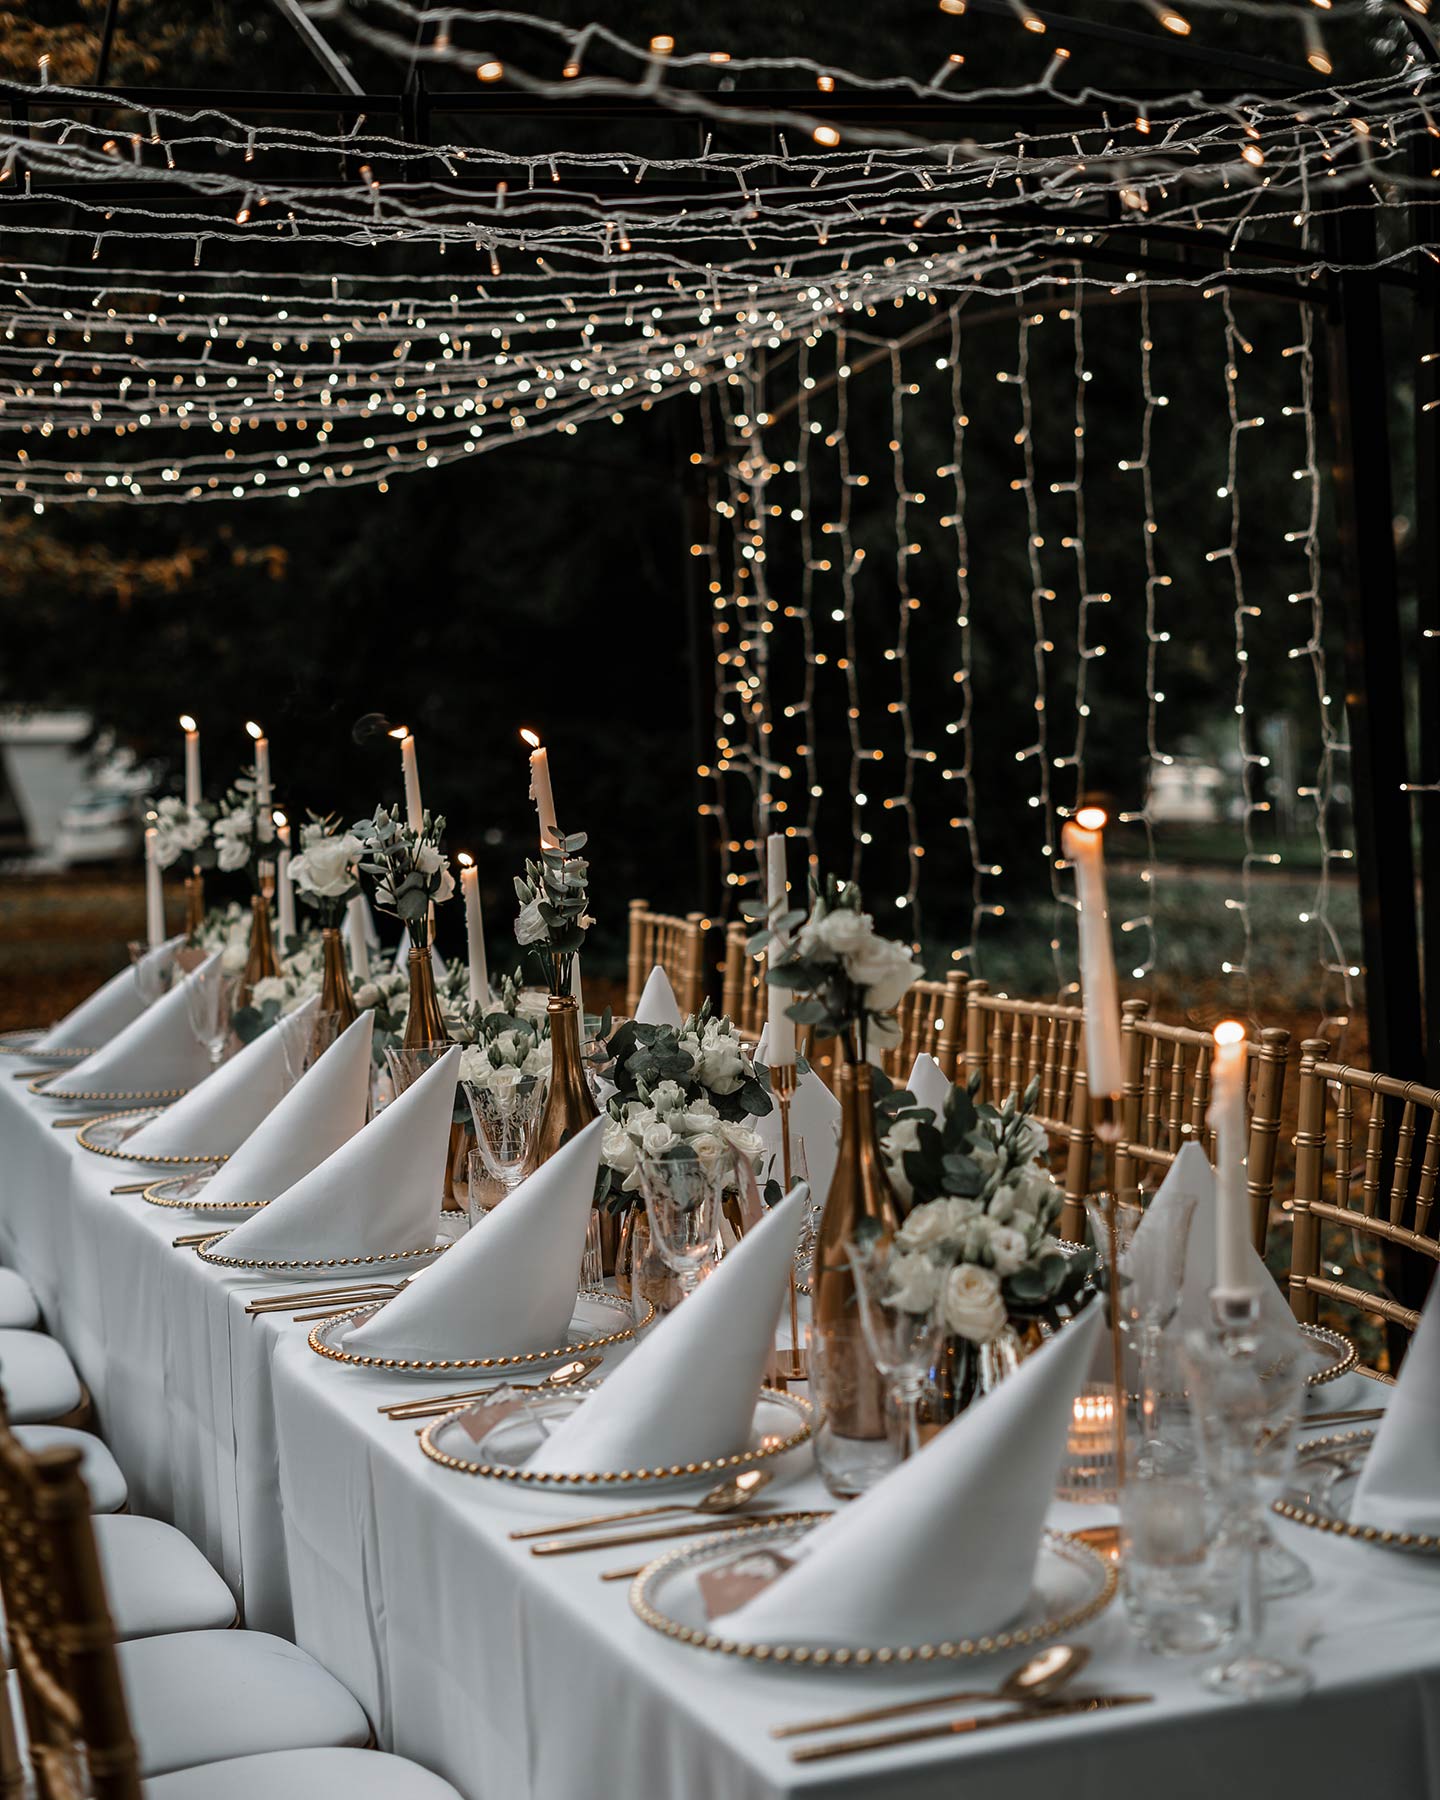 Der Hochzeitstisch im Ganzen ist zu sehen. Die liebevoll angerichtete Tafel in Gold, Weiß und Grün ist bereit für die Gäste.